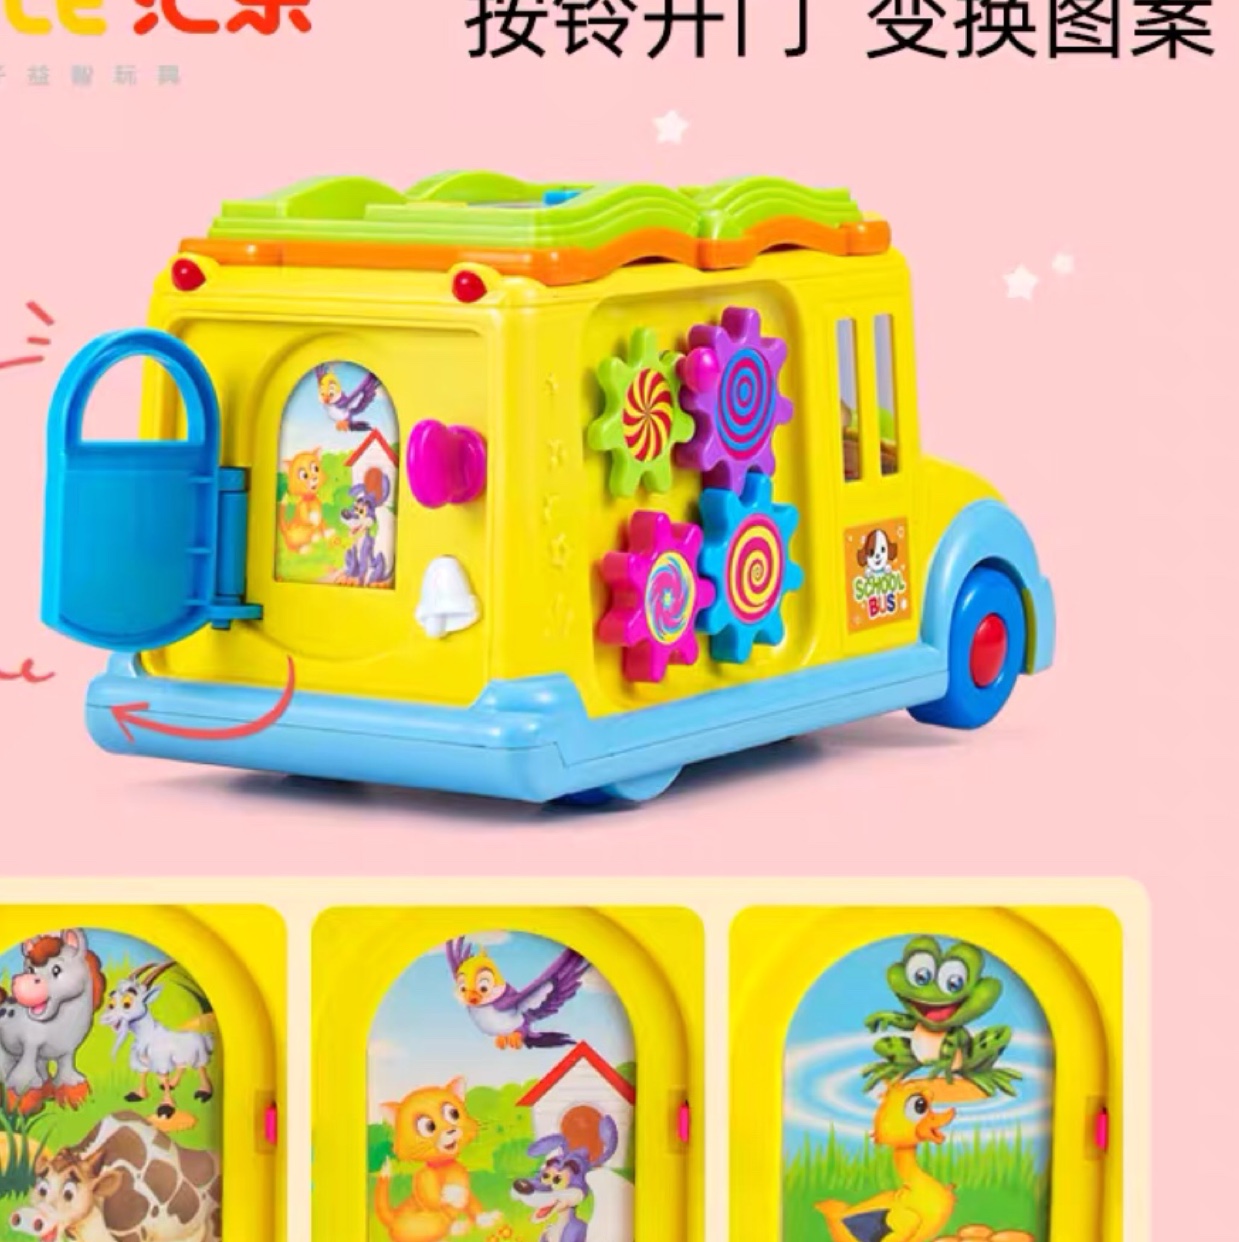 宝宝在游戏中能提高认𣲵能力开通思维提高宝宝的动手能力是一款智能校园巴士儿童益智早教玩具车细节图